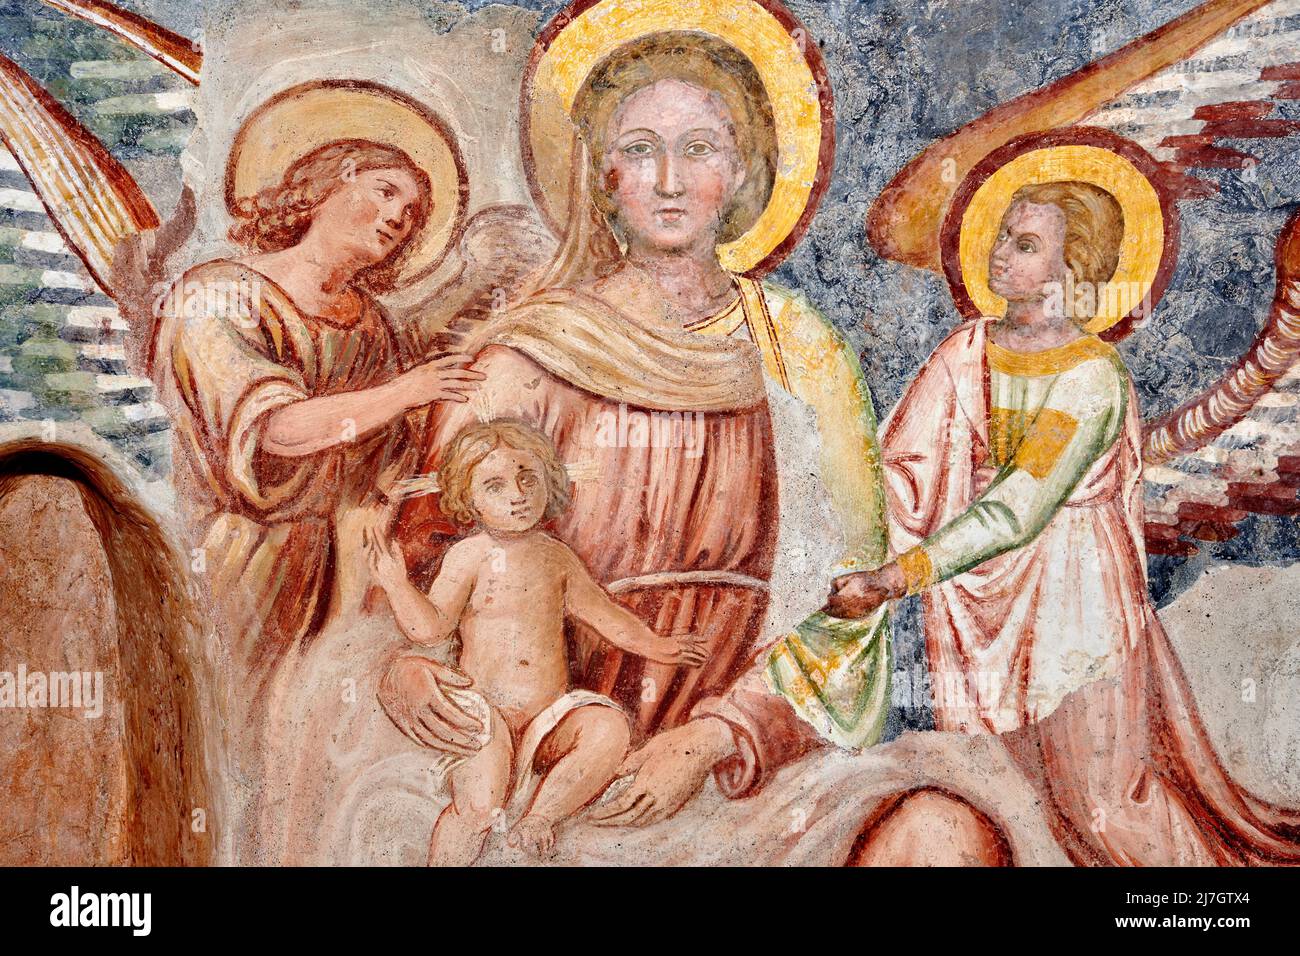 La Vergine col Bambino in trono con angeli - affresco - pittore lombardo del XIII/XIV secolo - Negrone di Scanzorosciate (BG),Italia, chiesa di S. P Stockfoto